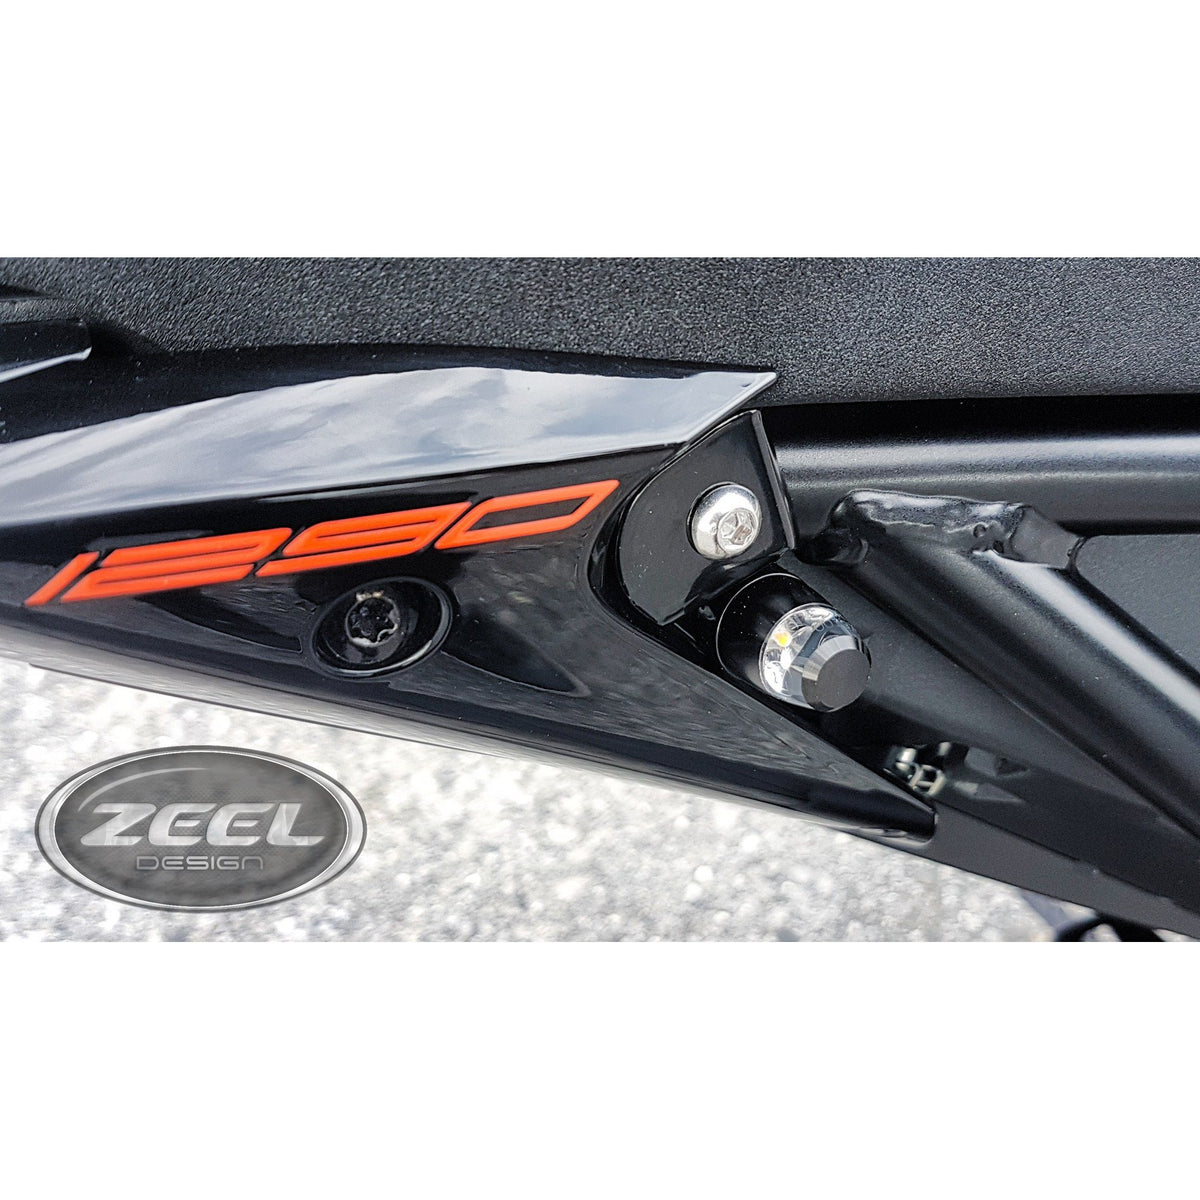 KTM SUPER DUKE R 1290 - Rear Turn signal light kit – ZEEL DESIGN